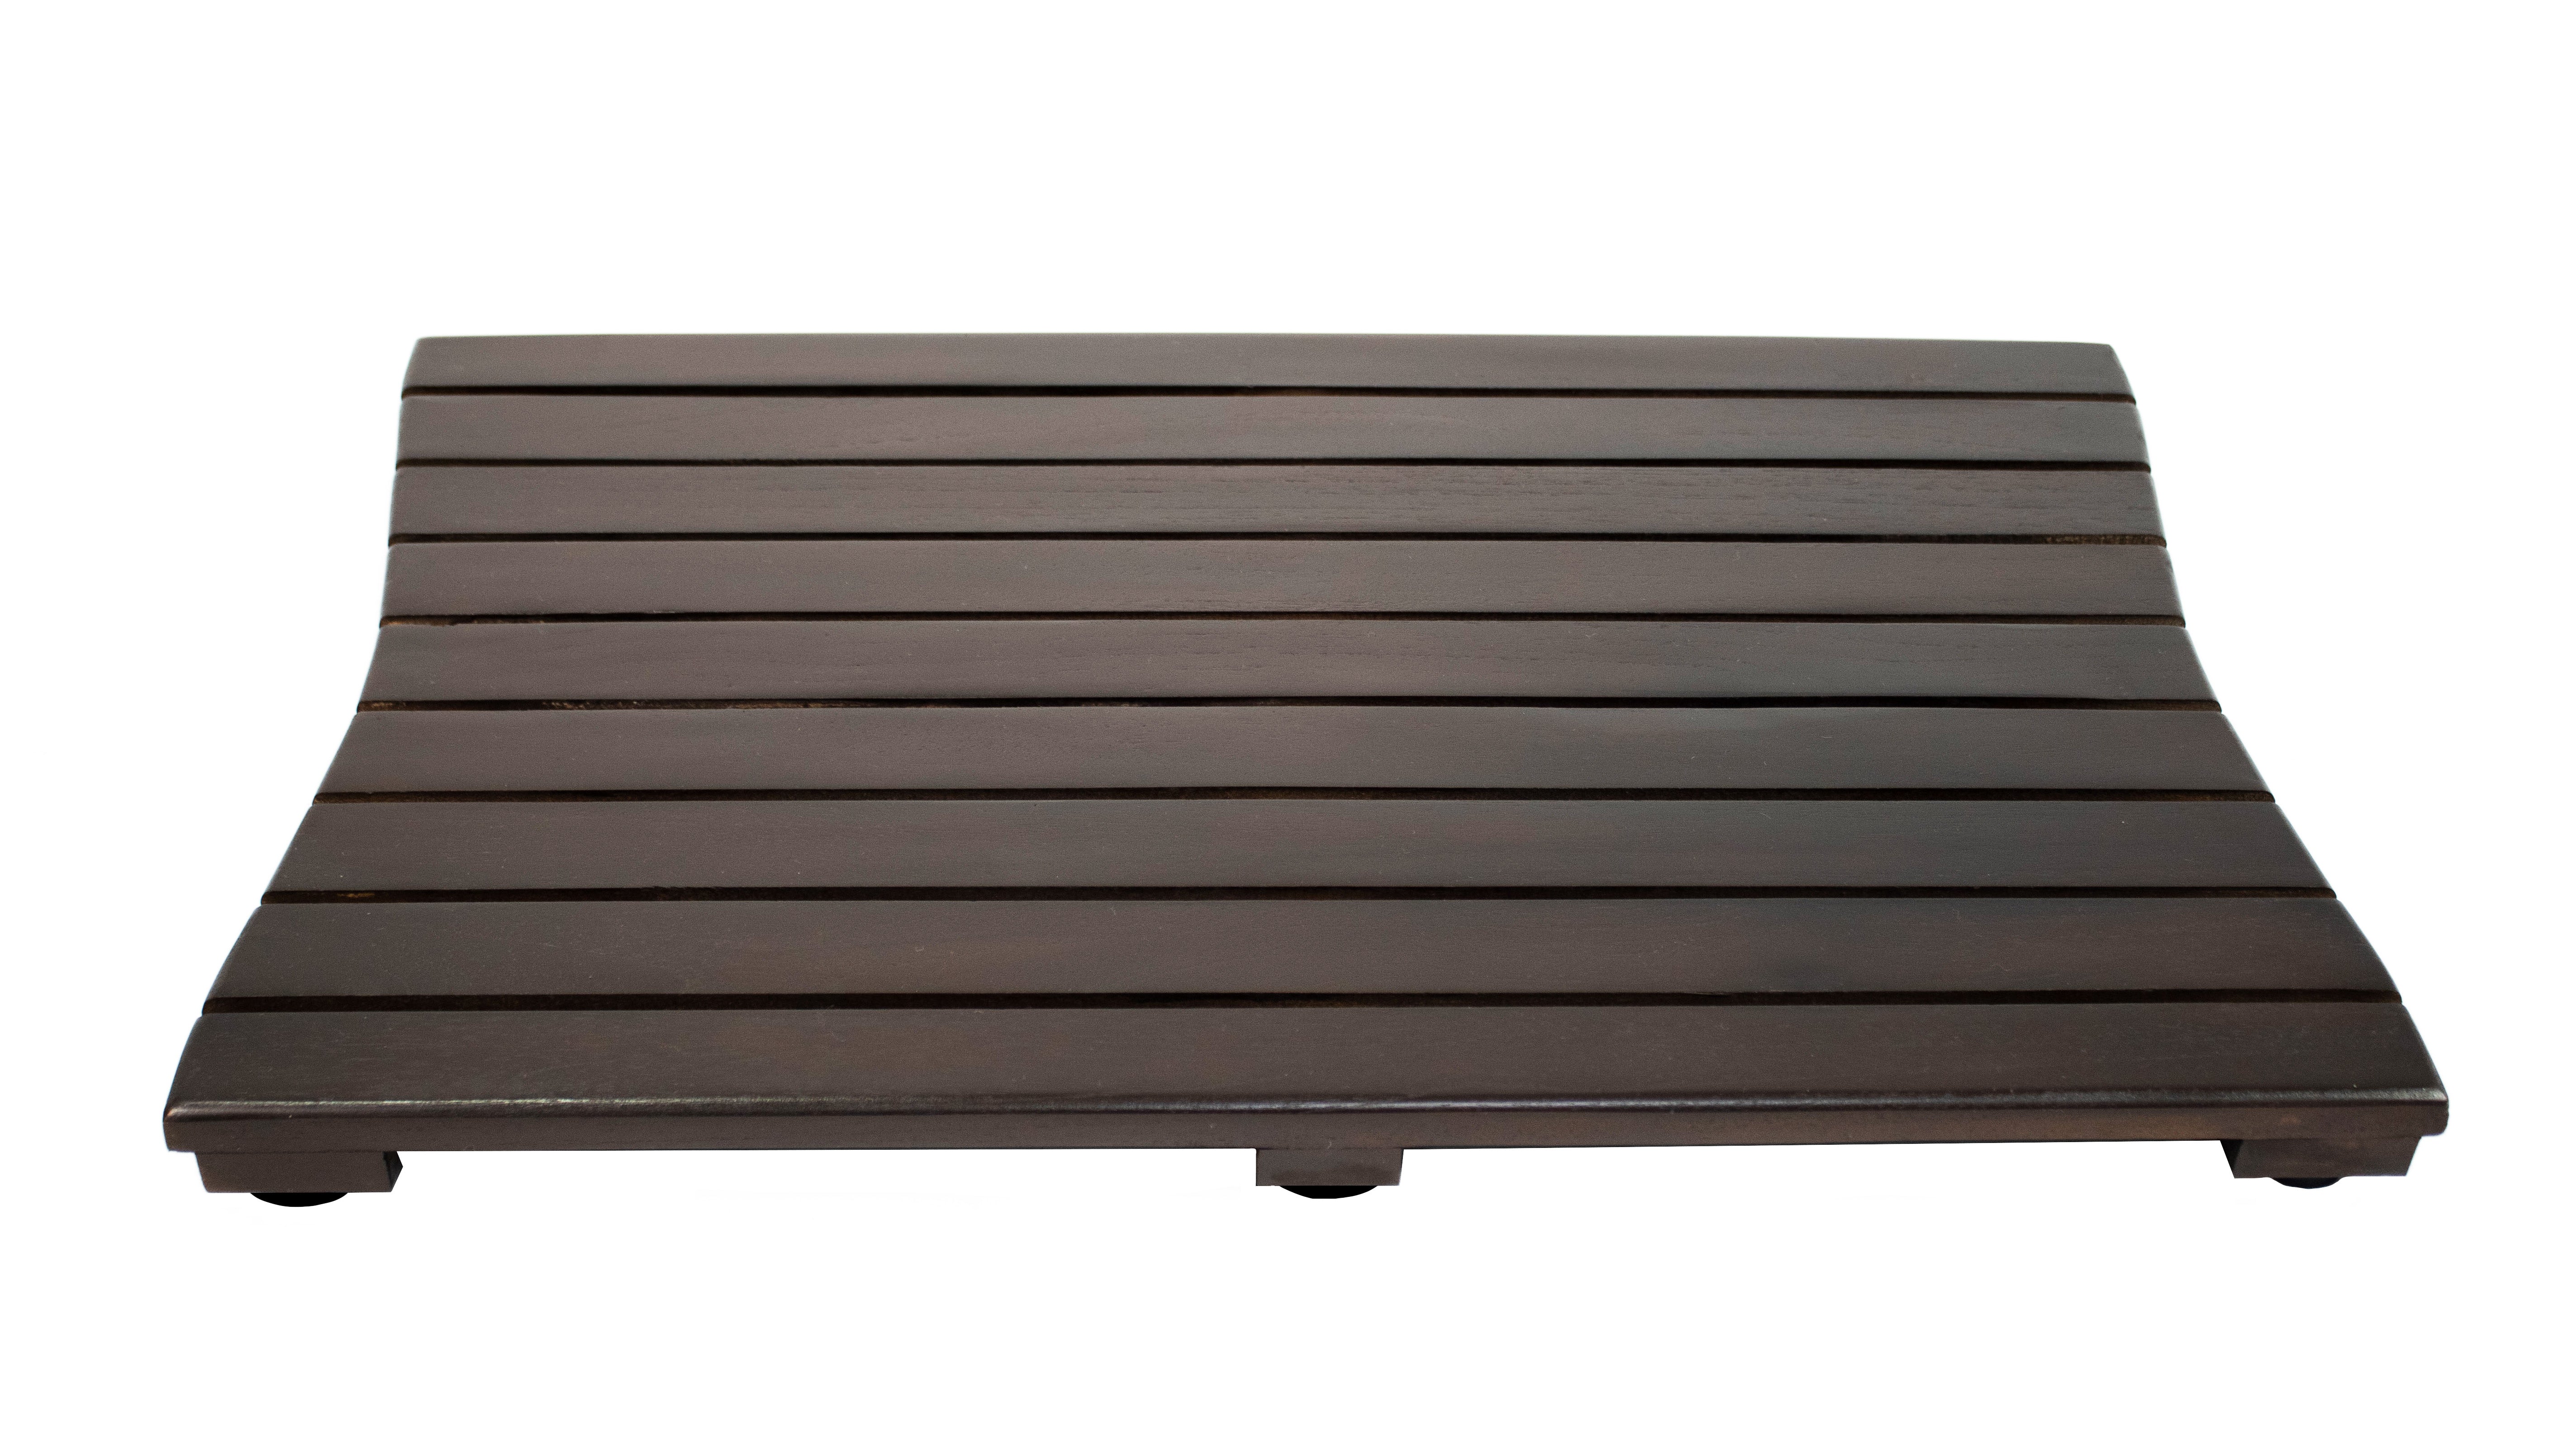 Eleganto® 34” Teak Bath Tray and Seat in EarthyTeak® Finish - DecoTeak® Eleganto® 23”W Teak Floor Mat in a Woodland Brown Finish